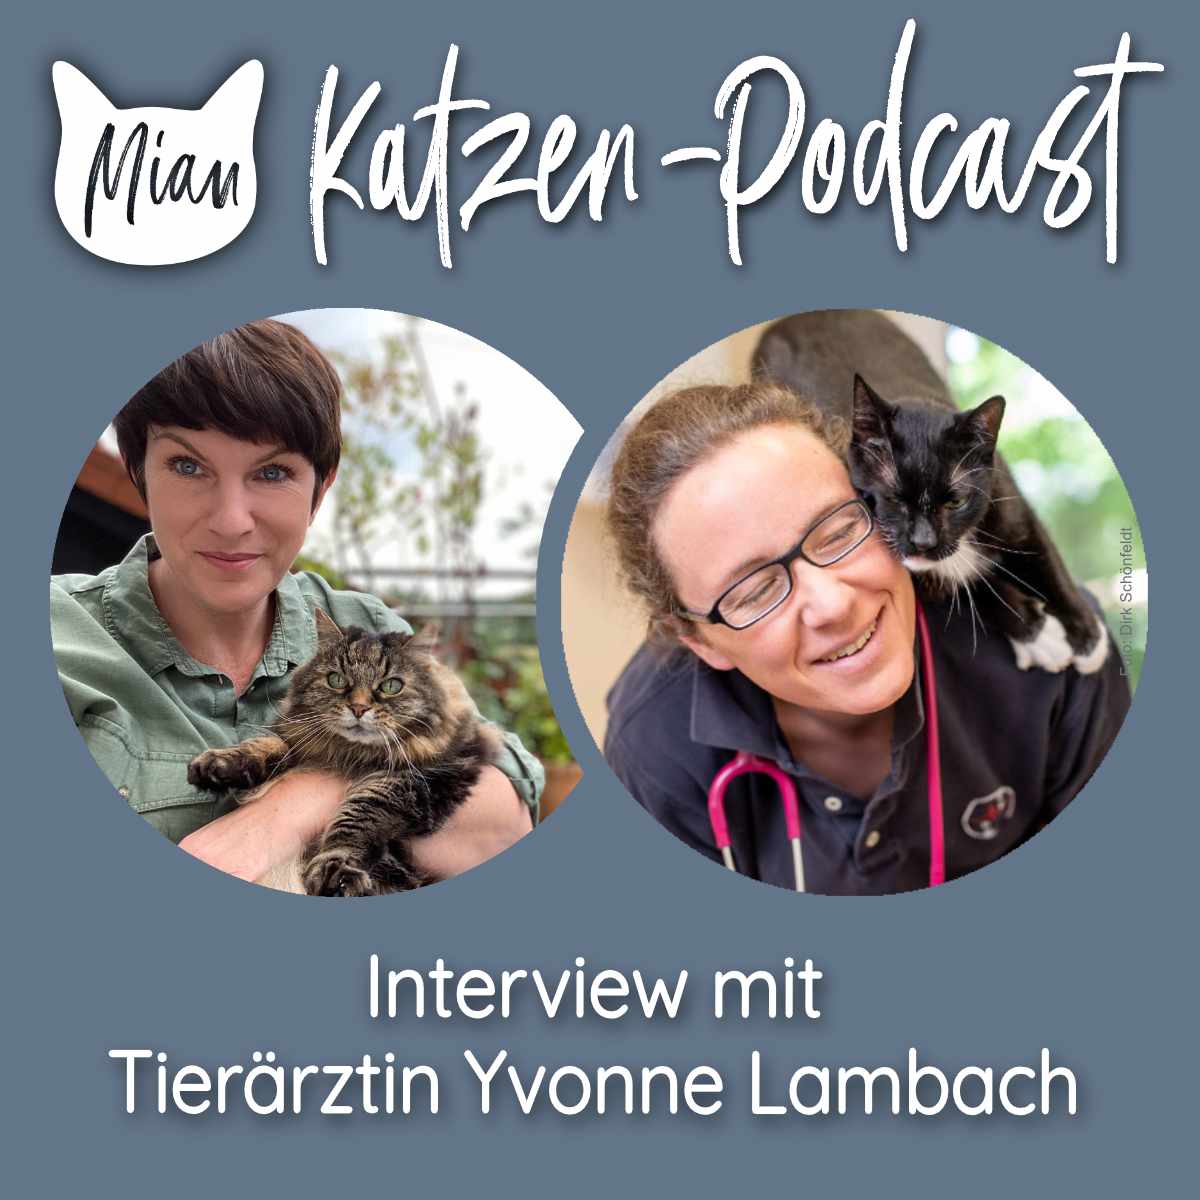 Nieren okay? Wichtige Vorsorgeuntersuchungen bei der Katze - Interview mit Yvonne Lambach 1/2 | MKP128